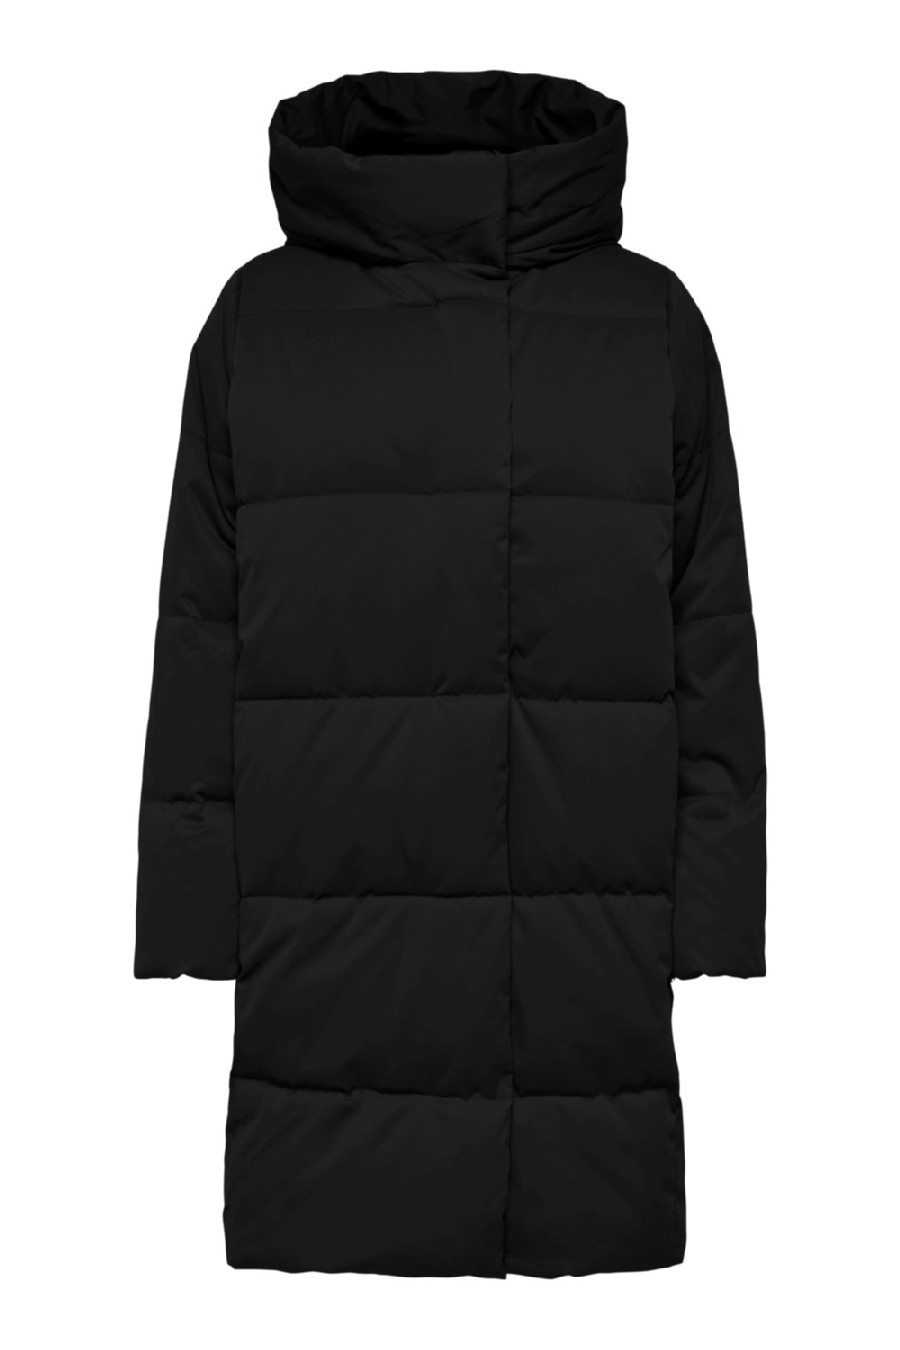 Winter jacket JACQUELINE DE YONG 15270979-Black